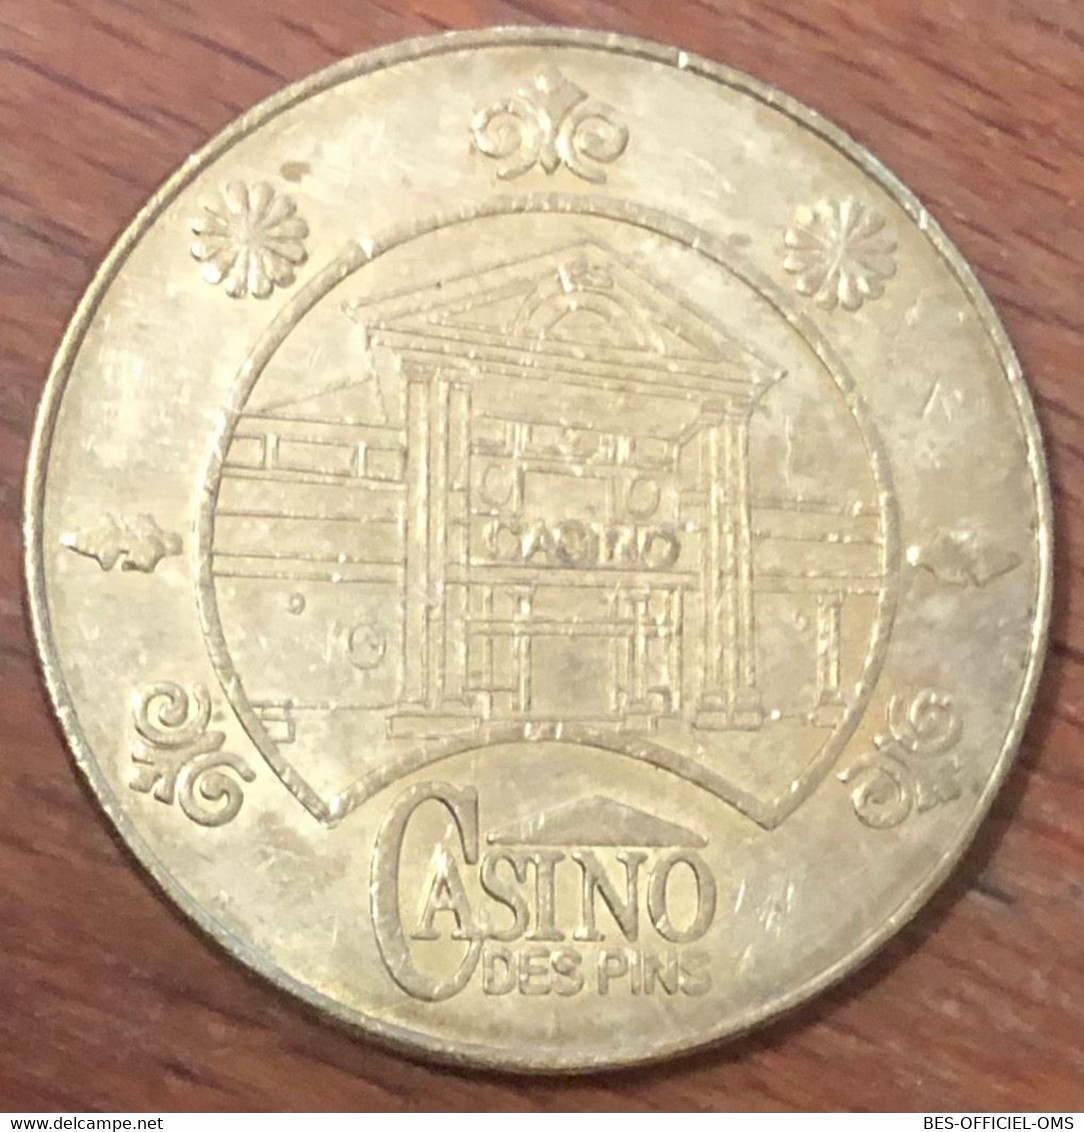 85 LES SABLES D'OLONNE CASINO DES PINS JETON DE 5 EUROS SLOT MACHINE EN MÉTAL CHIP COINS TOKENS GAMING - Casino